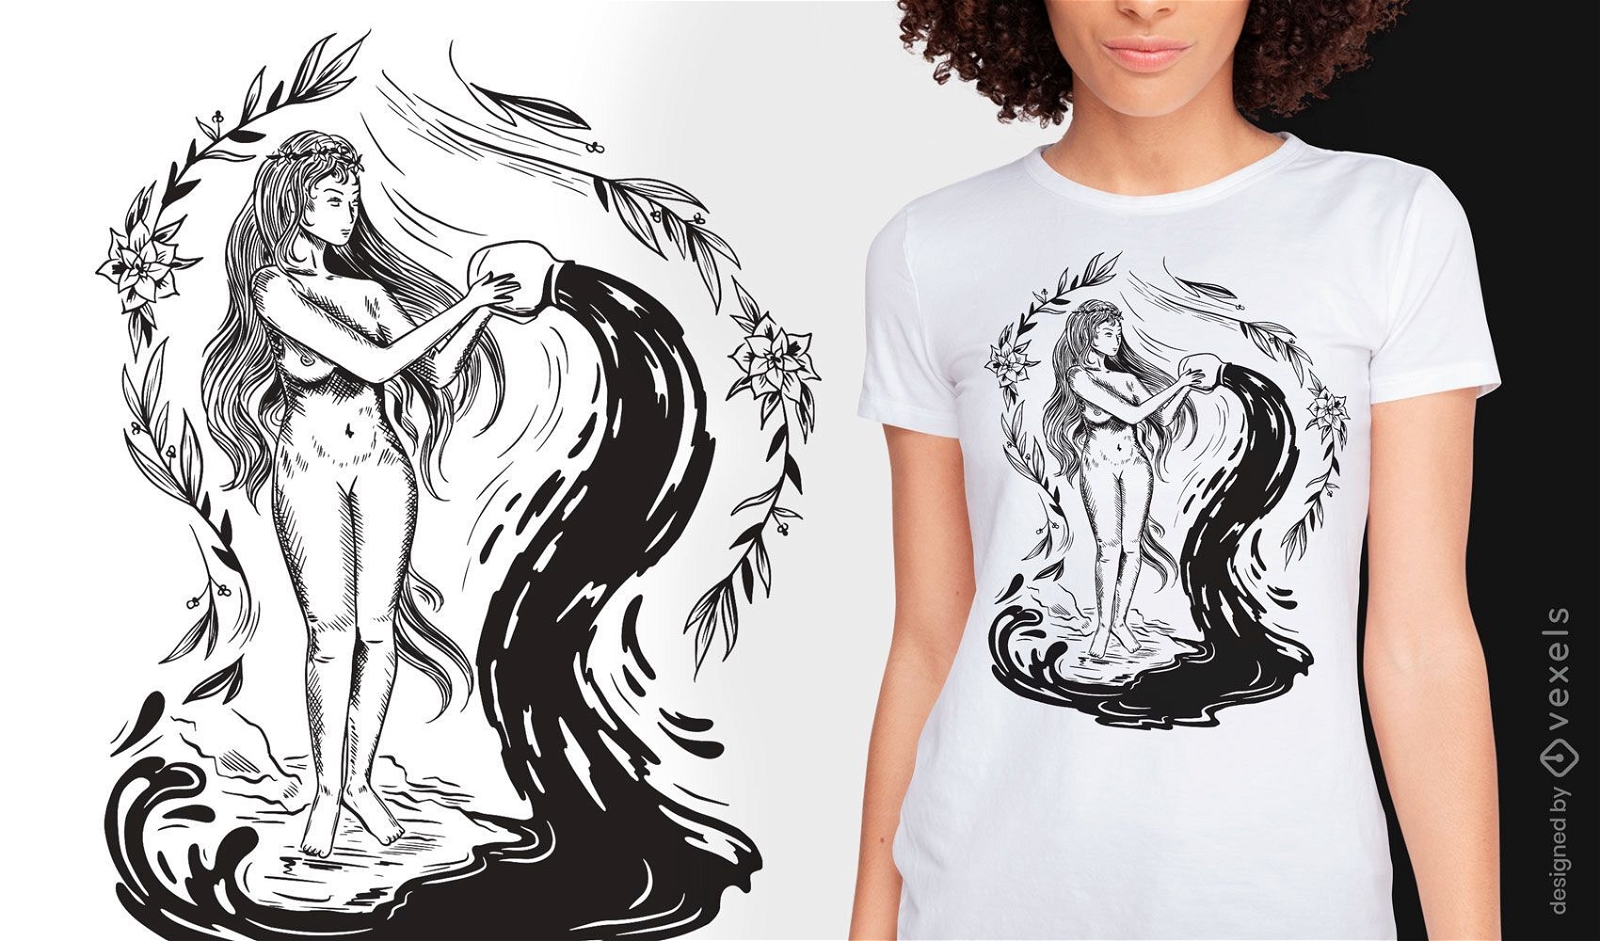 Frau dunkles Jugendstil-T-Shirt-Design